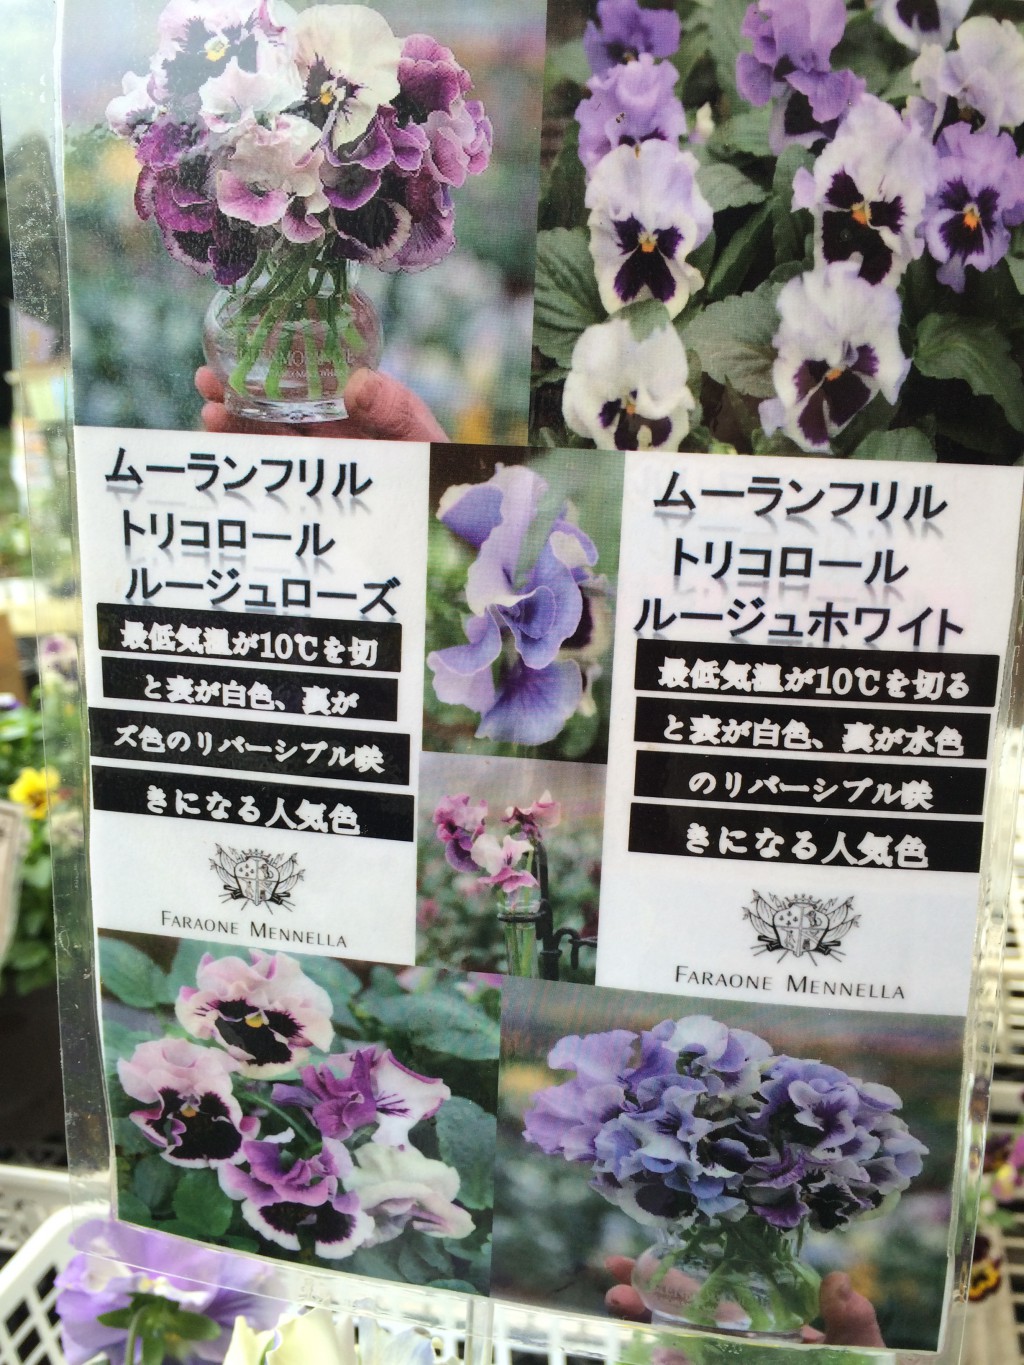 ムーランフリル 次に咲く花の期待感 寄せ植え倶楽部ブログ